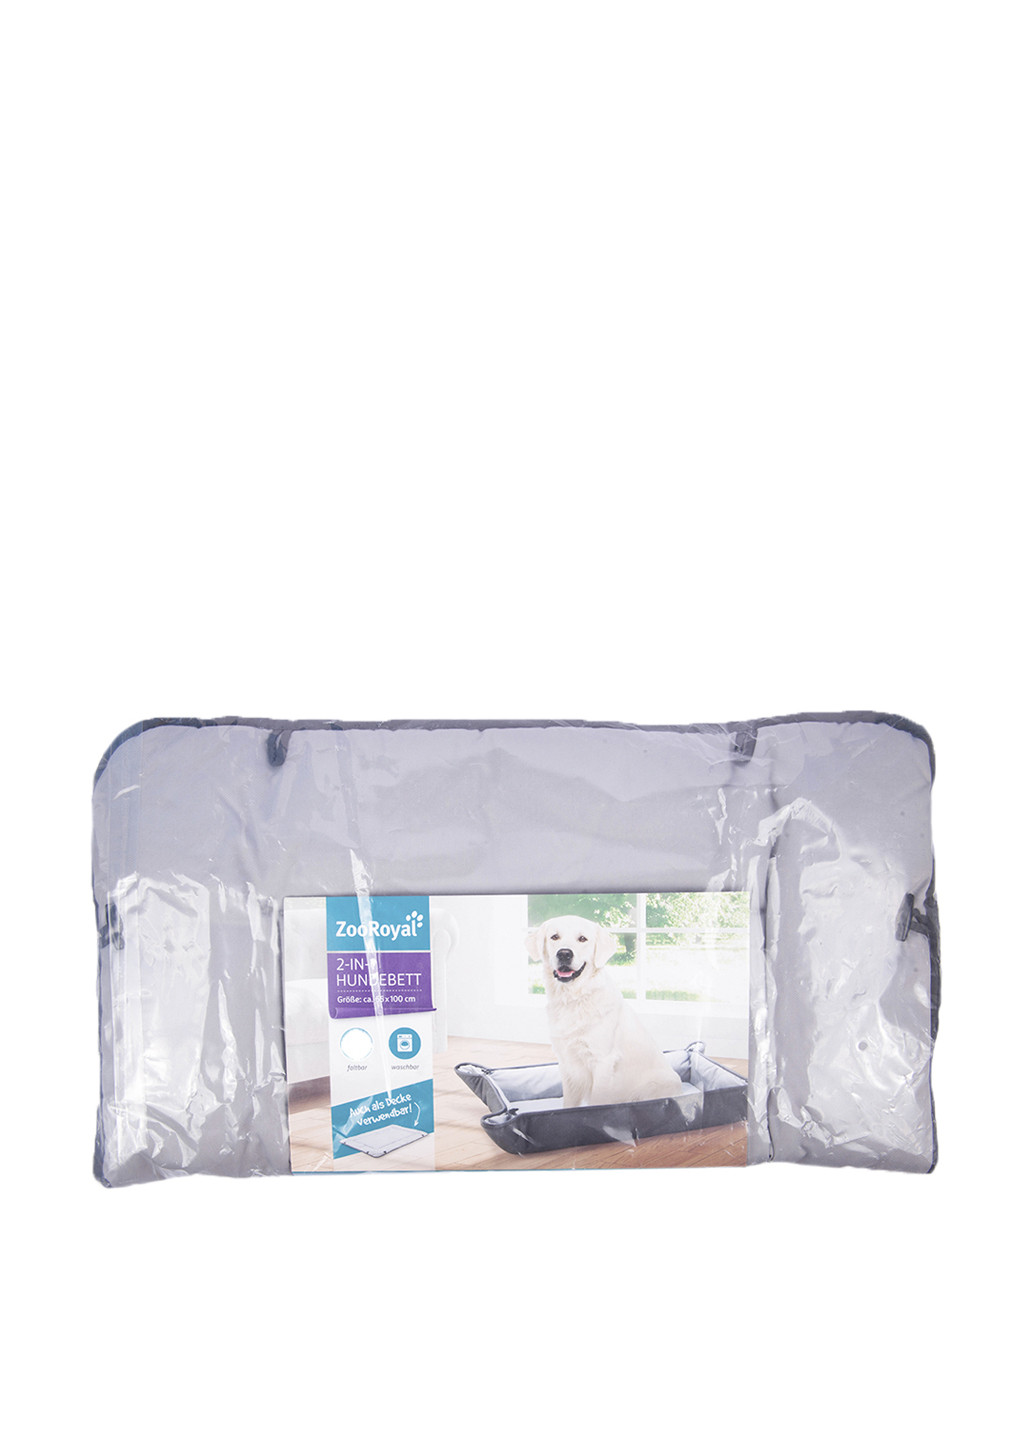 Лежак для собаки 2-в-1, 98х63 см Lidl серый